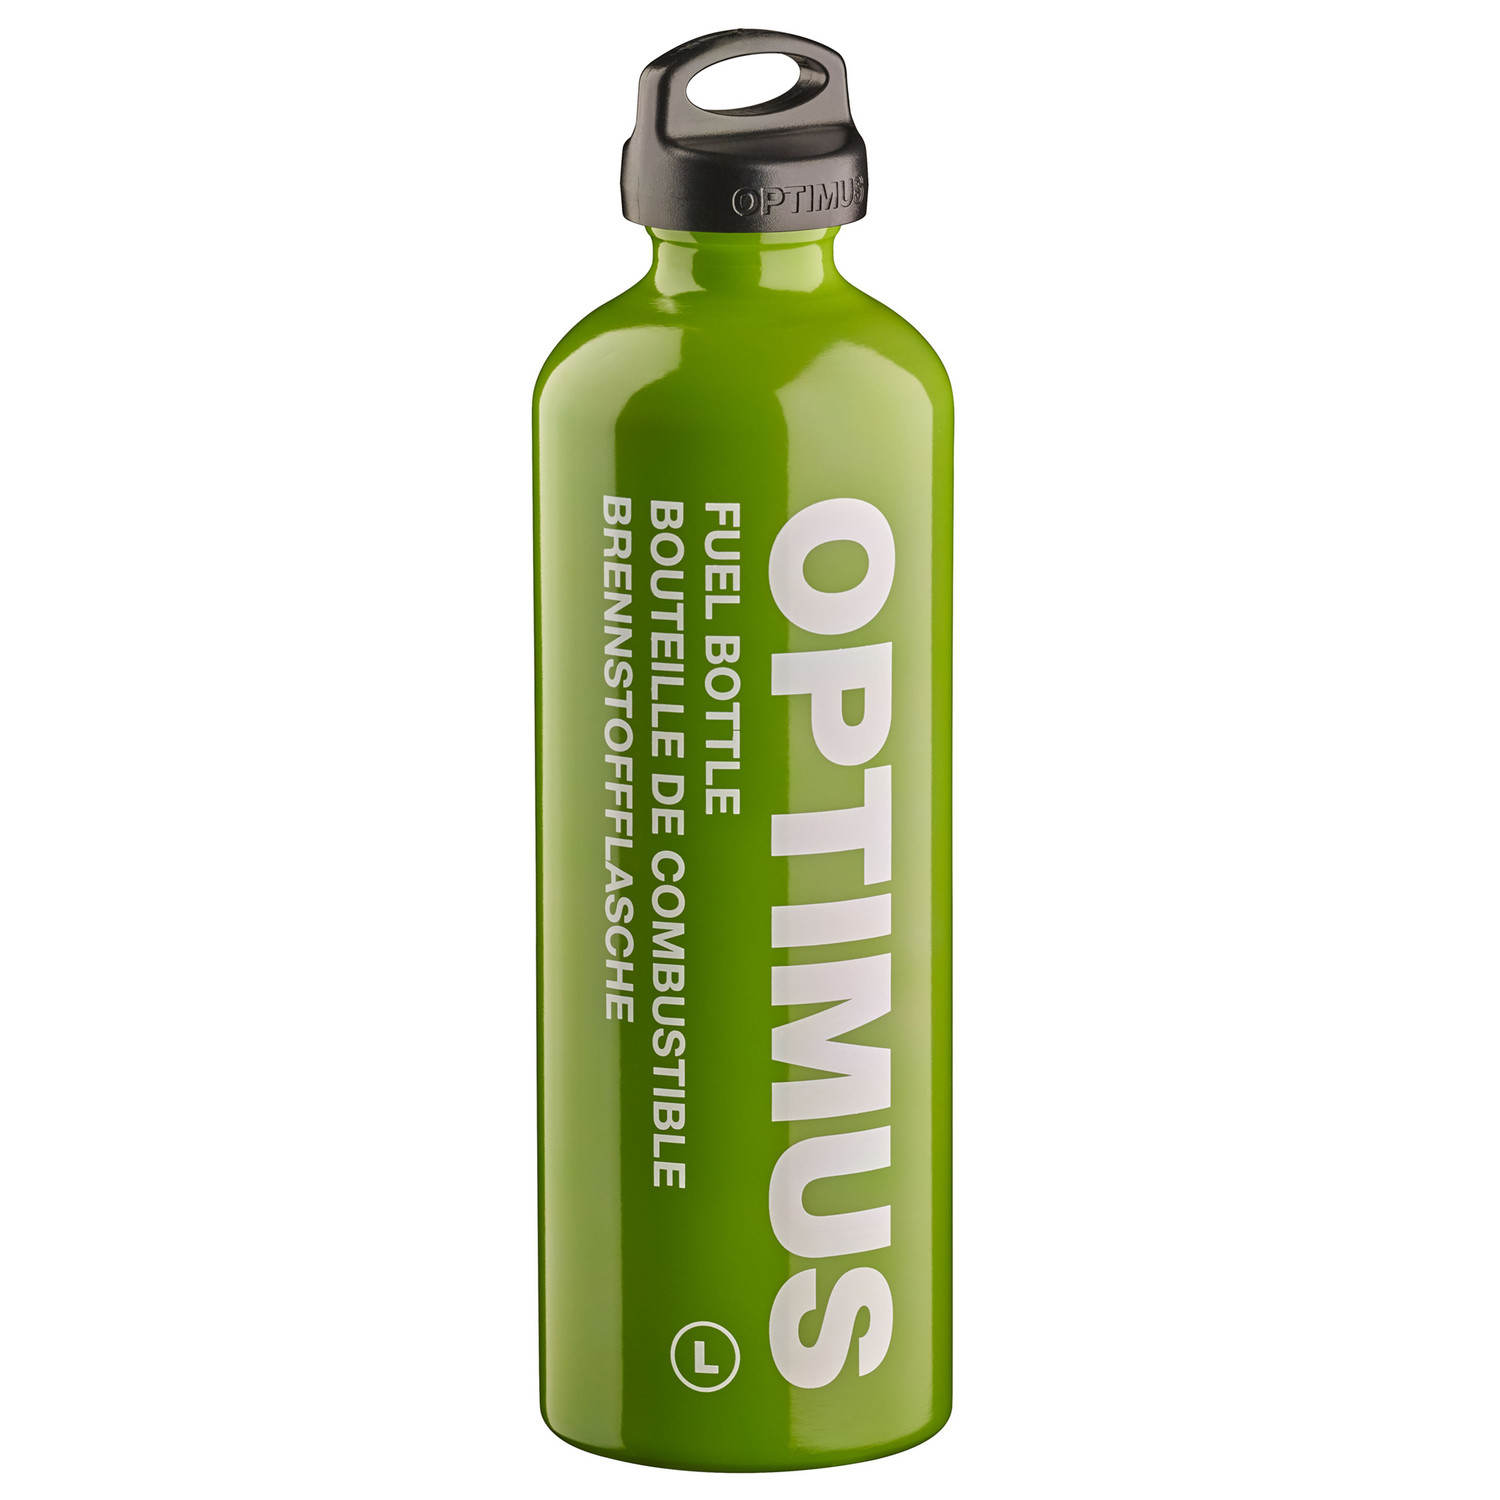 Optimus Brennstoffflasche L: 1,0 Liter in Grün